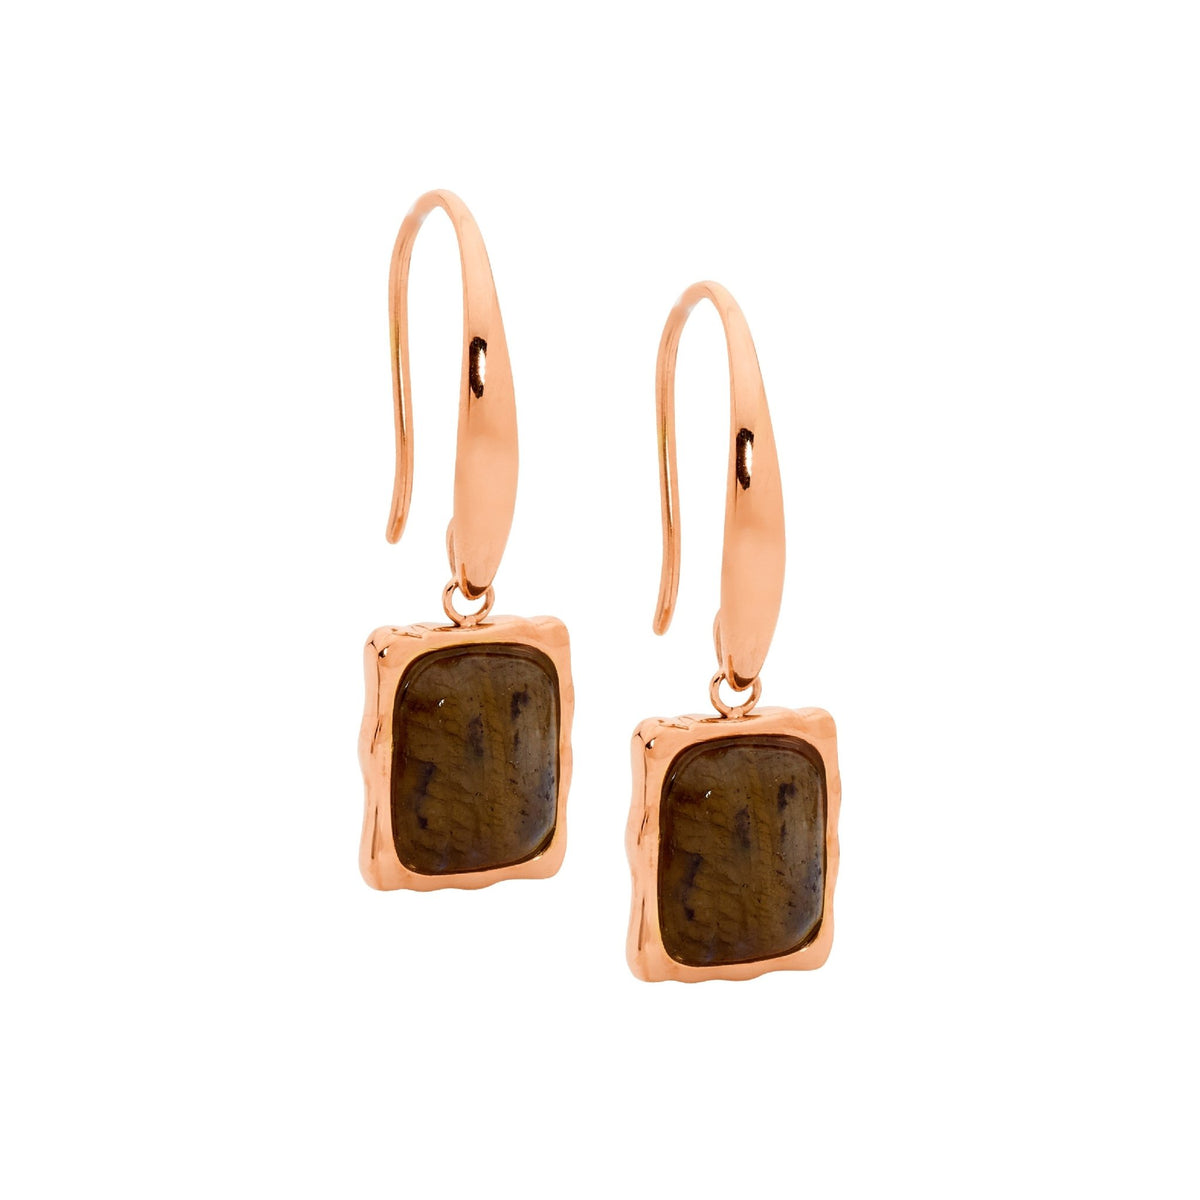 Stainless Steel Earring Gold - SE263G - Markbridge Jewellers